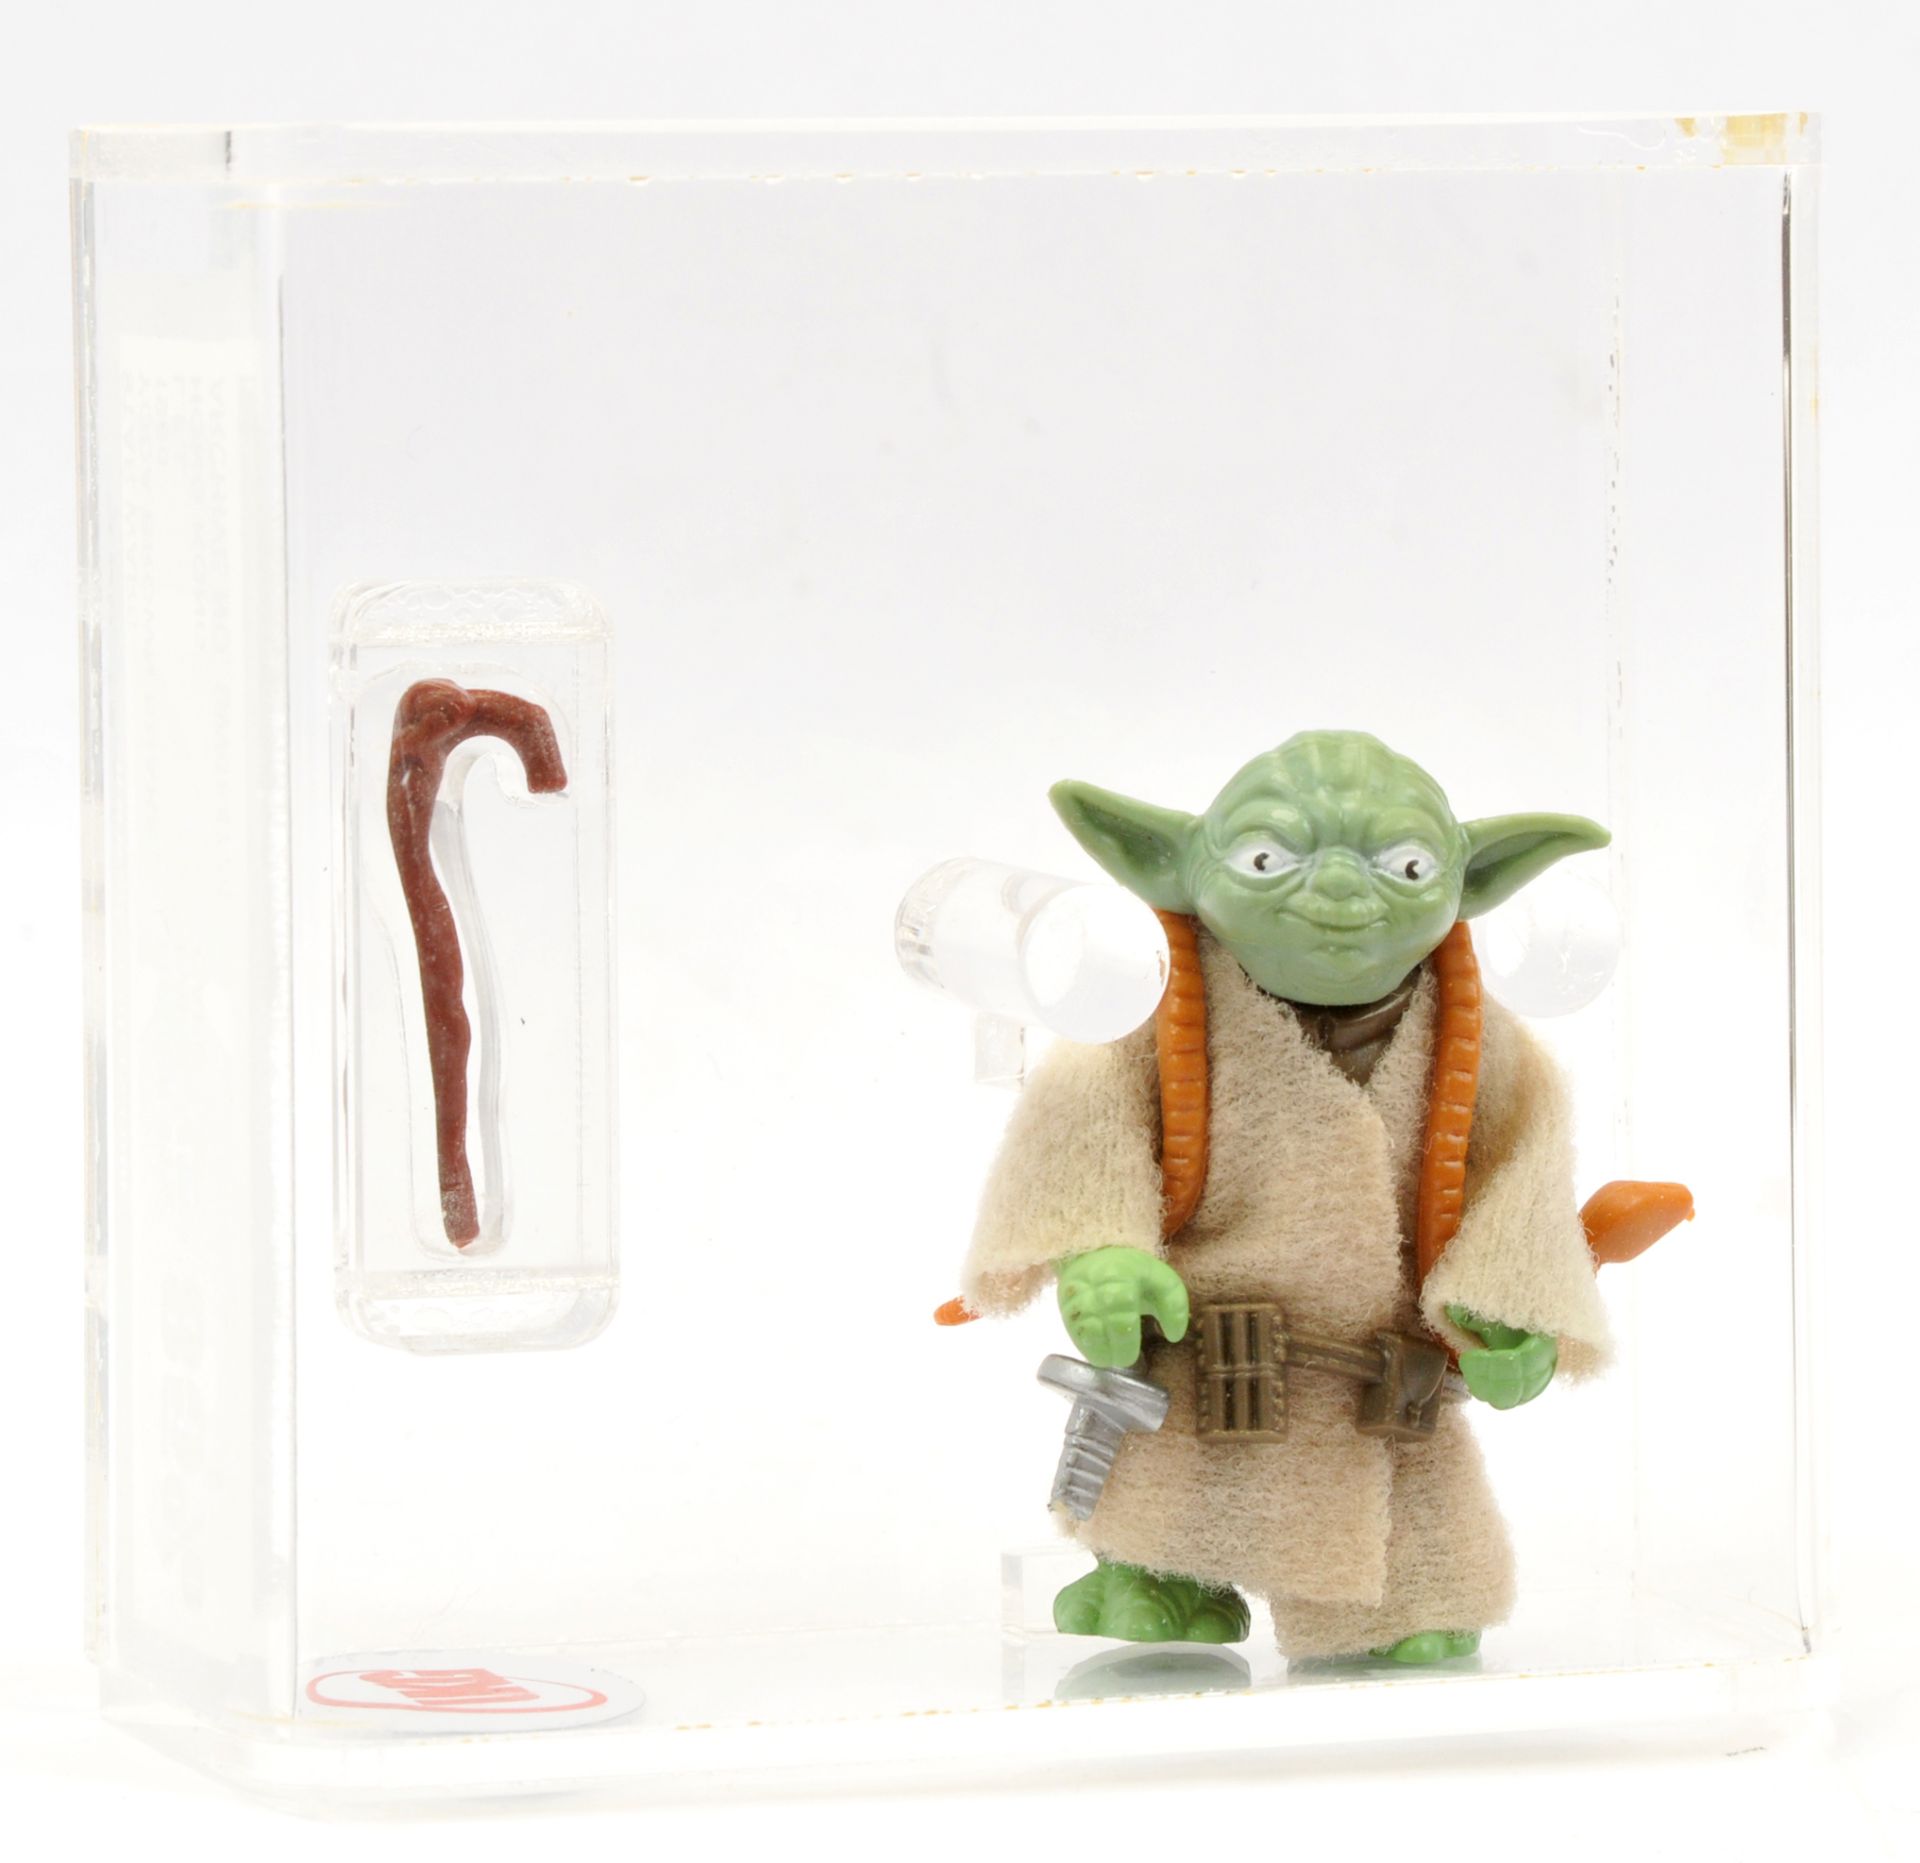 Kenner Star Wars vintage Yoda brown snake 3 3/4" figure, UKG Graded 85% - Image 2 of 3